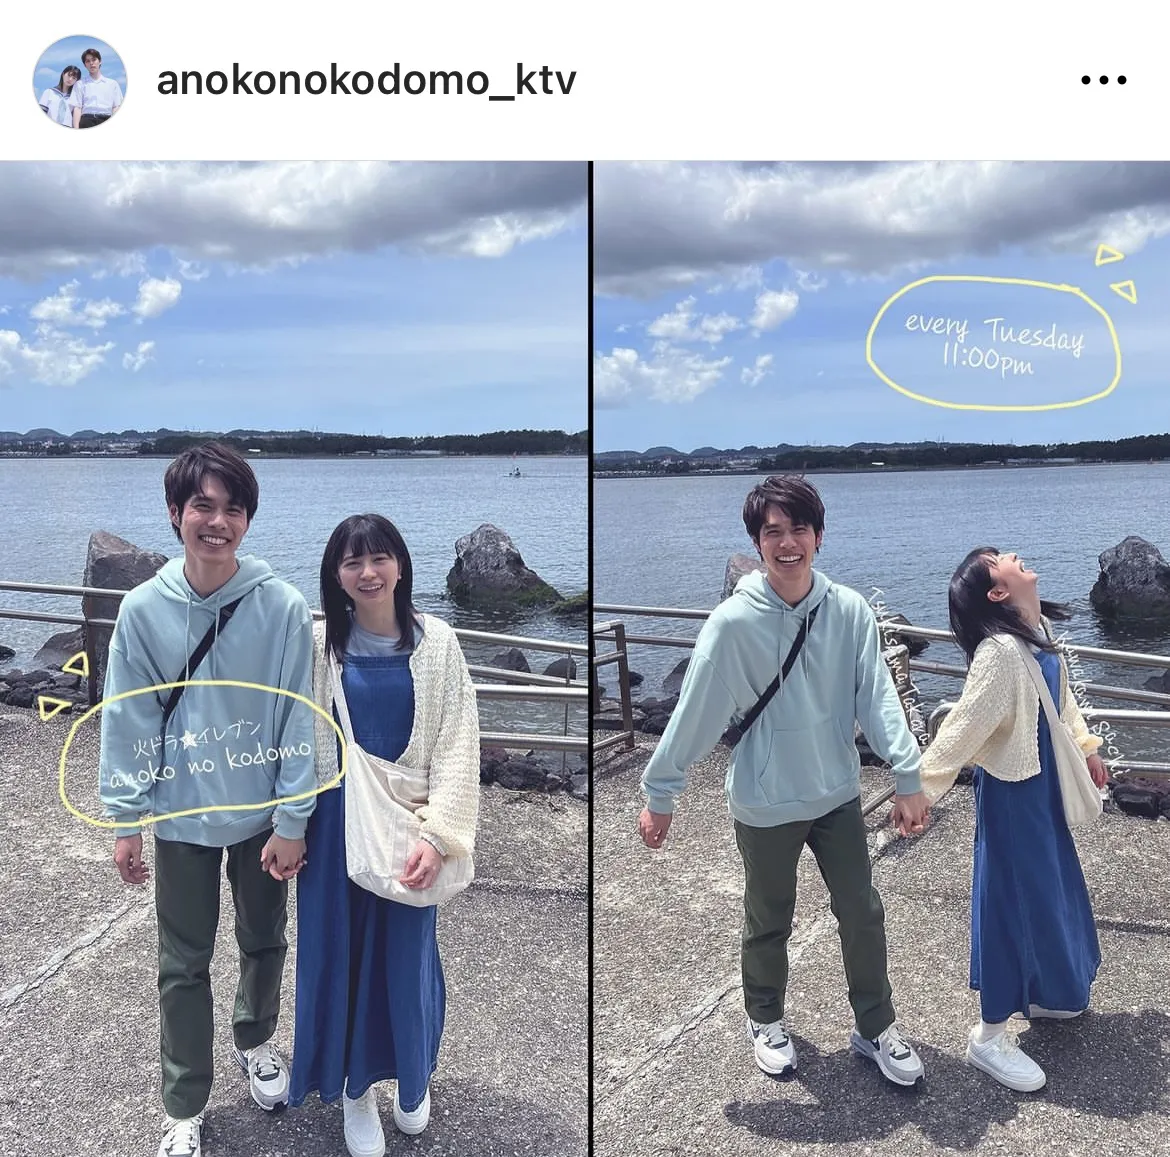  ※画像はドラマ「あの子の子ども」公式Instagram(anokonokodomo_ktv)より